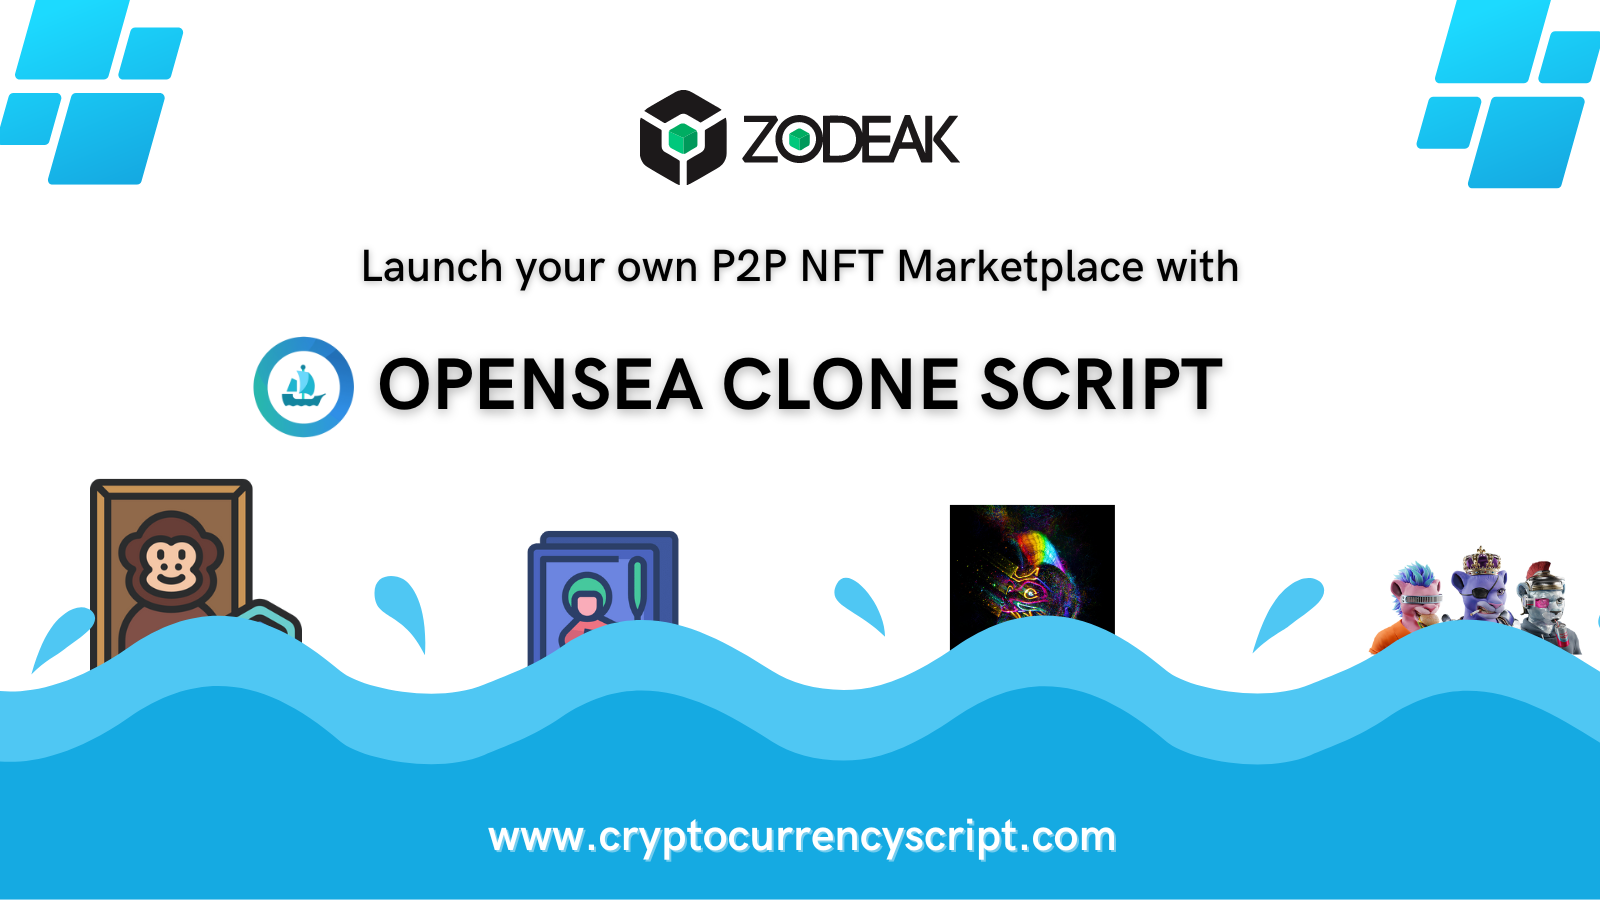 Opensea clone script | Launch NFT Marketplace like Opensea